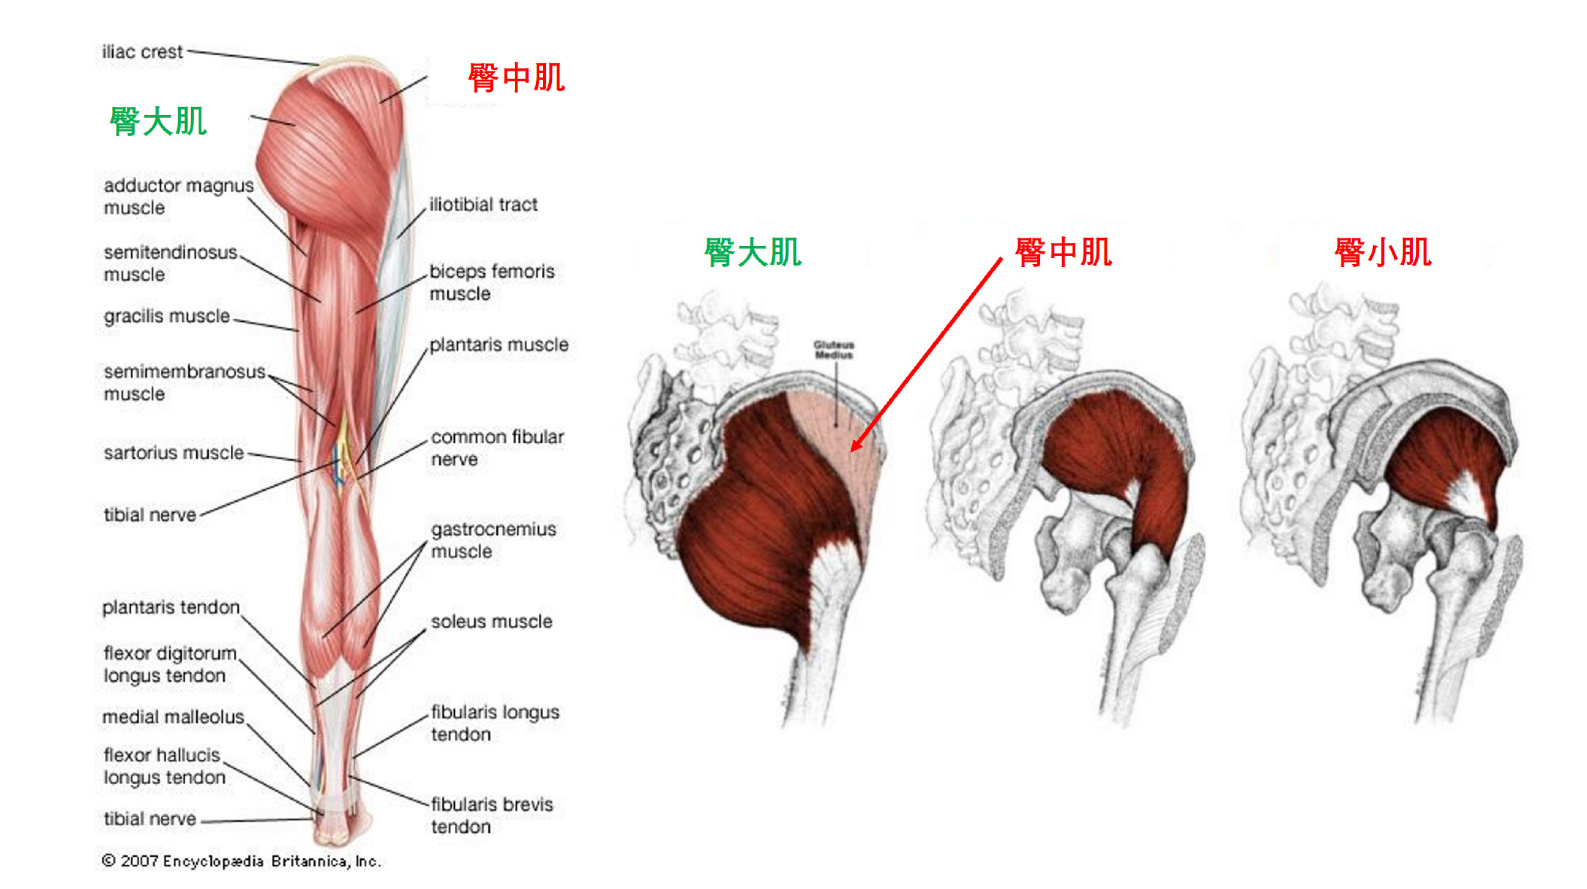 1 臀大肌(gluteus maximus):臀部最主要的肌肉,也是健